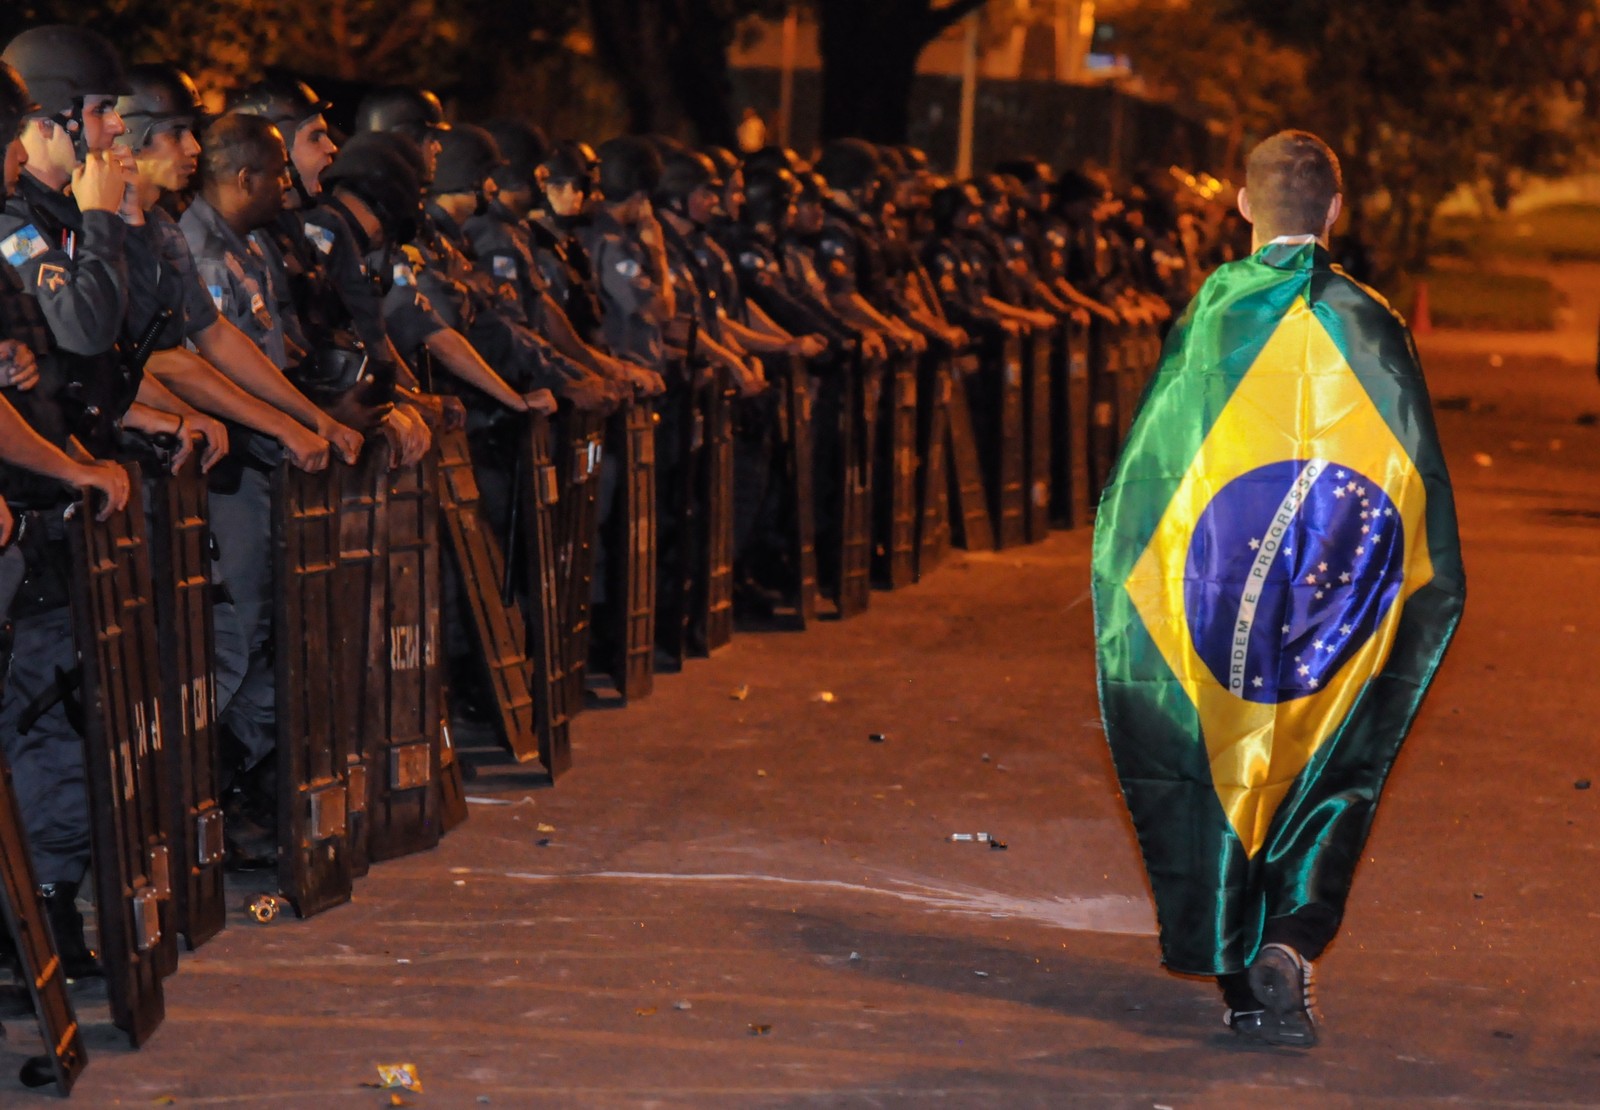 Manifestação no centro do Rio de Janeiro, em 20 de junho de 2013. Protesto reuniu cerca de 300 mil pessoas na Av. Presidente Vargas, terminando em confrontos entre manifestantes radicais e a PM  — Foto: Thiago Freitas / Agência O Globo 